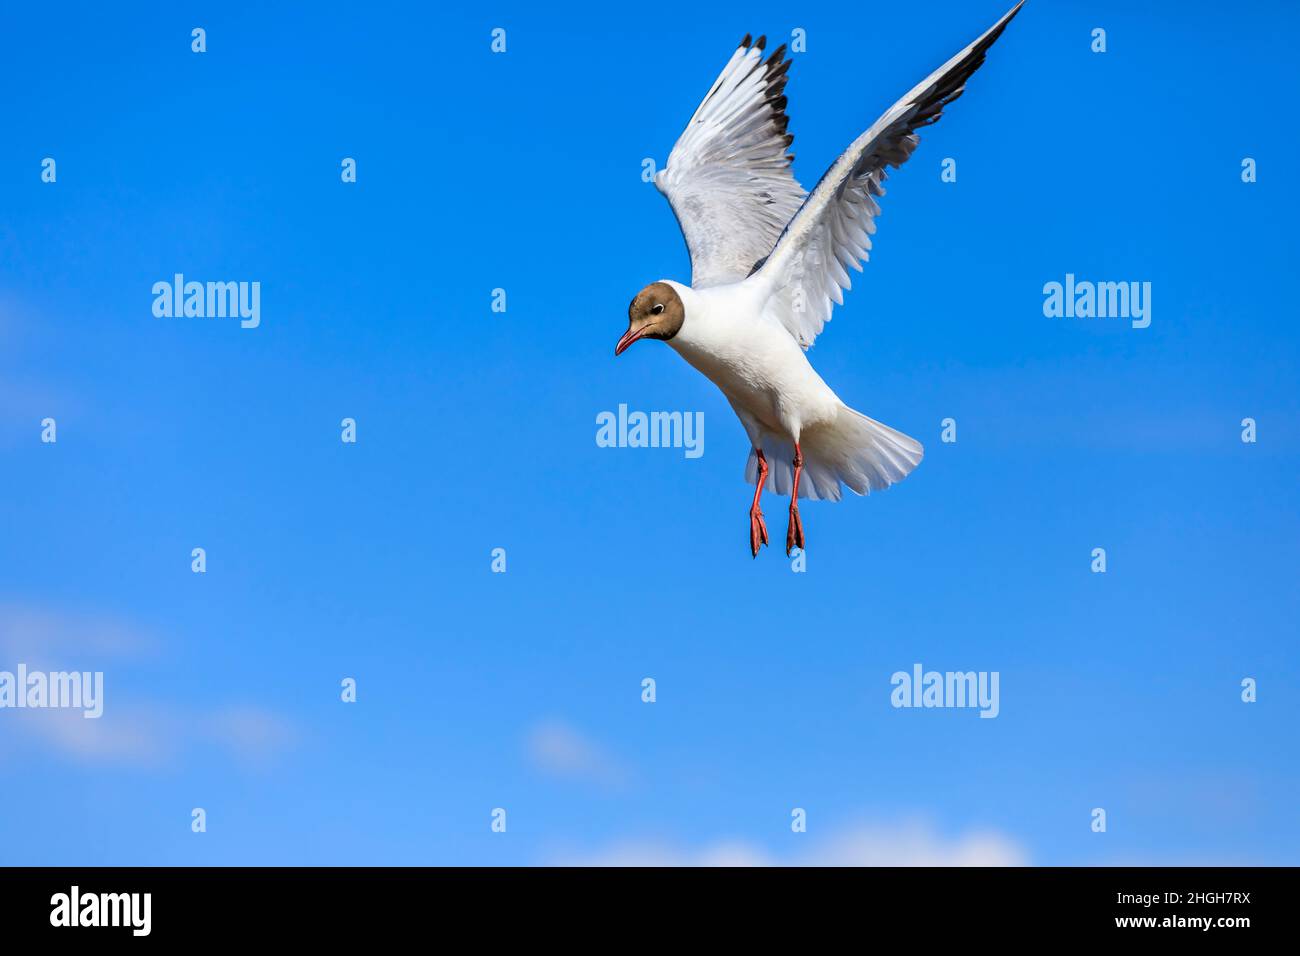 Un gabbiano a testa nera che vola nel cielo blu. La posizione graziosa dell'uccello a mezz'aria. Foto Stock